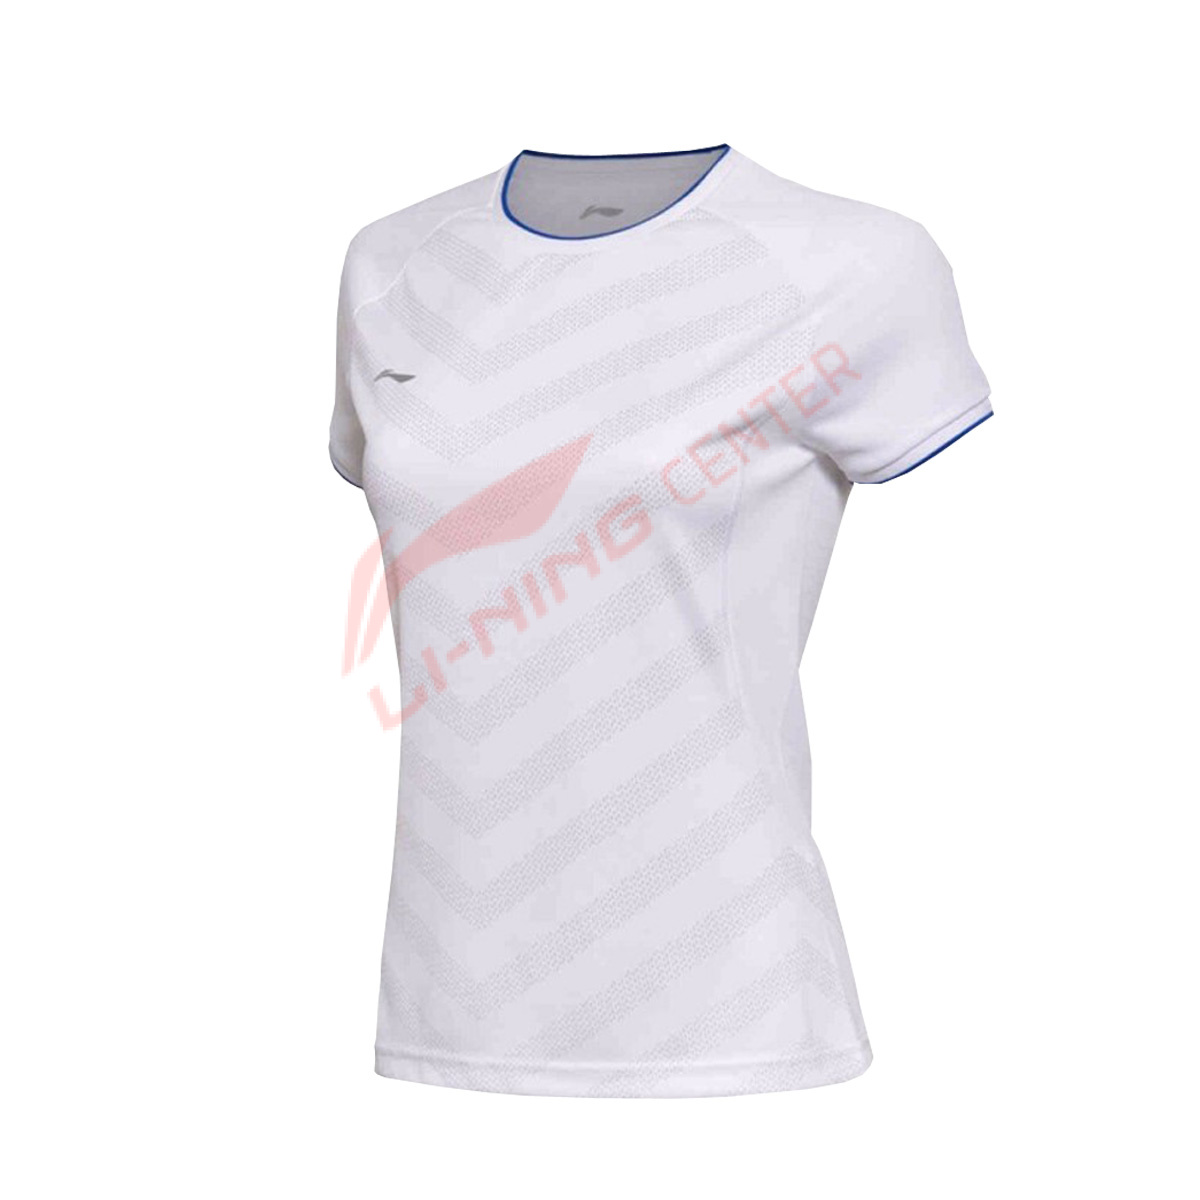 Женская футболка LI-NING AAYM024-1C (размеры: XL, 2XL)